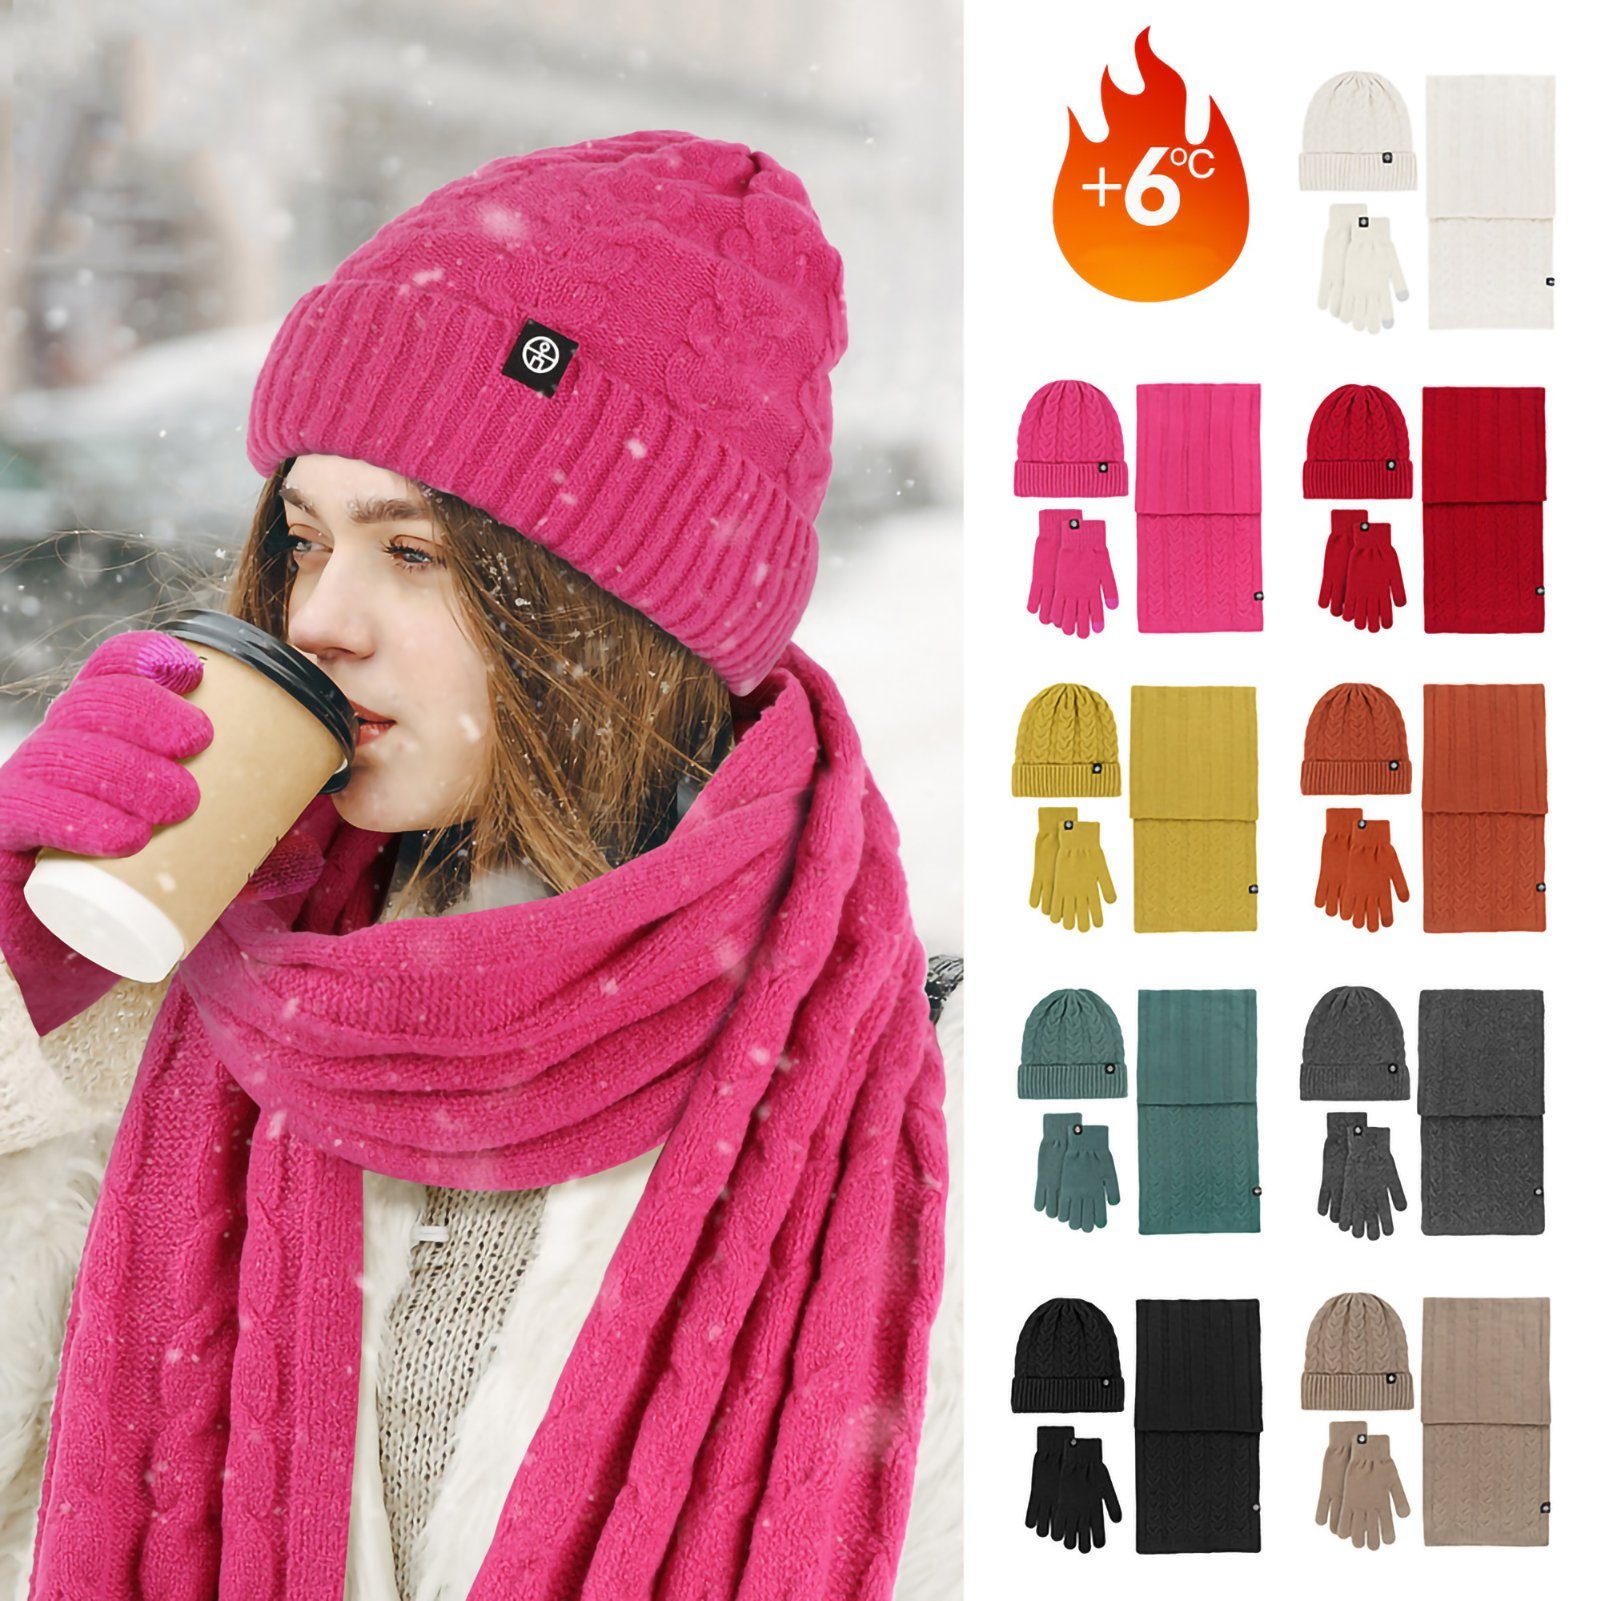 Rutaqian Strickmütze Strickmütze Mütze Schal Gesichtsabdeckung Touchscreen Handschuhe Set (Aktualisieren Sie hoch -Qualitäts -Touch -Handschuhe , Langer Schal, Dreiteiliges, kältebeständiges, warmes Fleece-Set für den Außenbereich) Winter Warme Stricksets für Männer Frauen